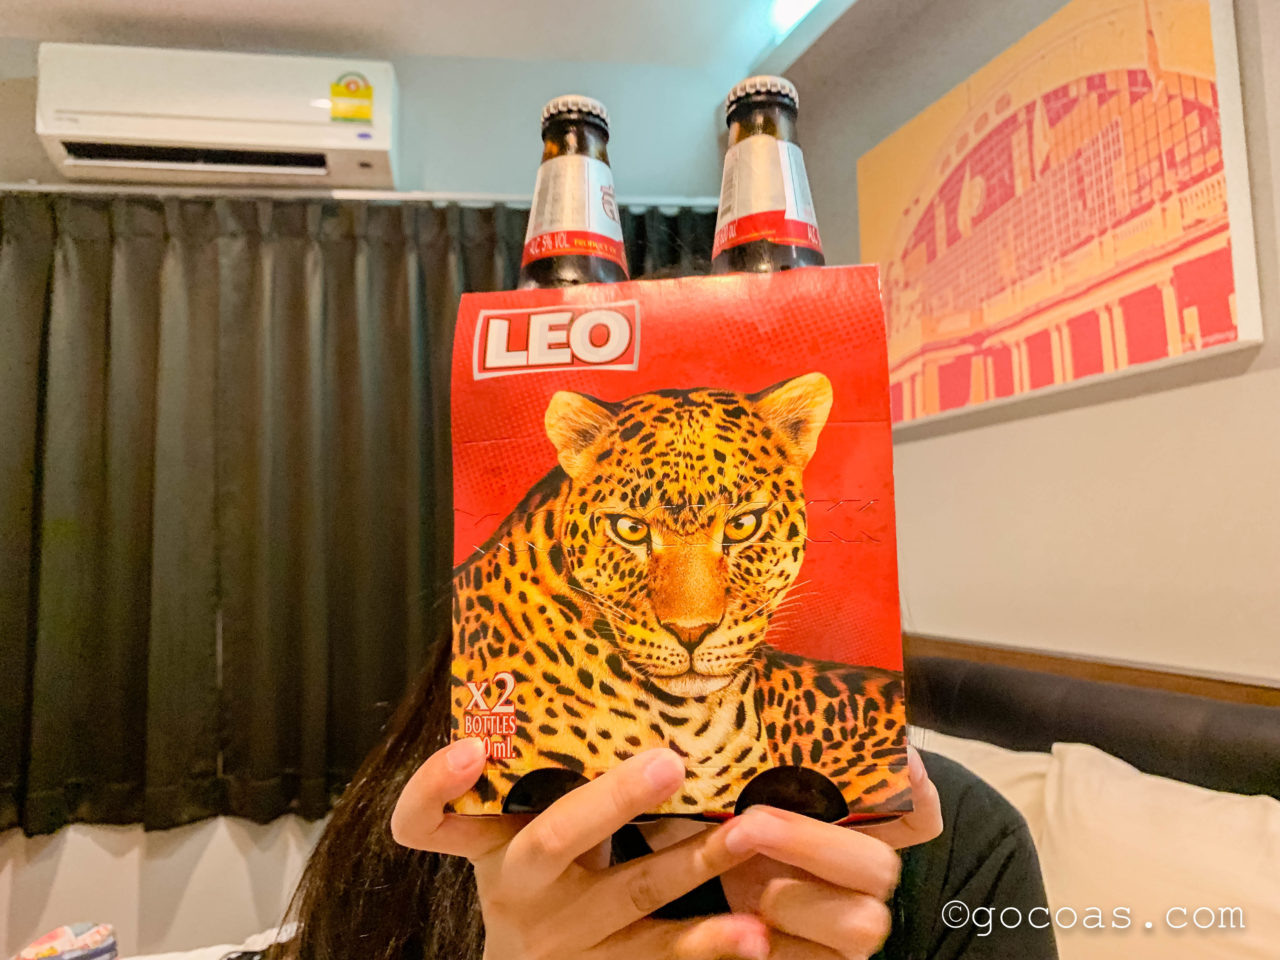 バンコクのコンビニで買ったヒョウのデザインのLEOビール